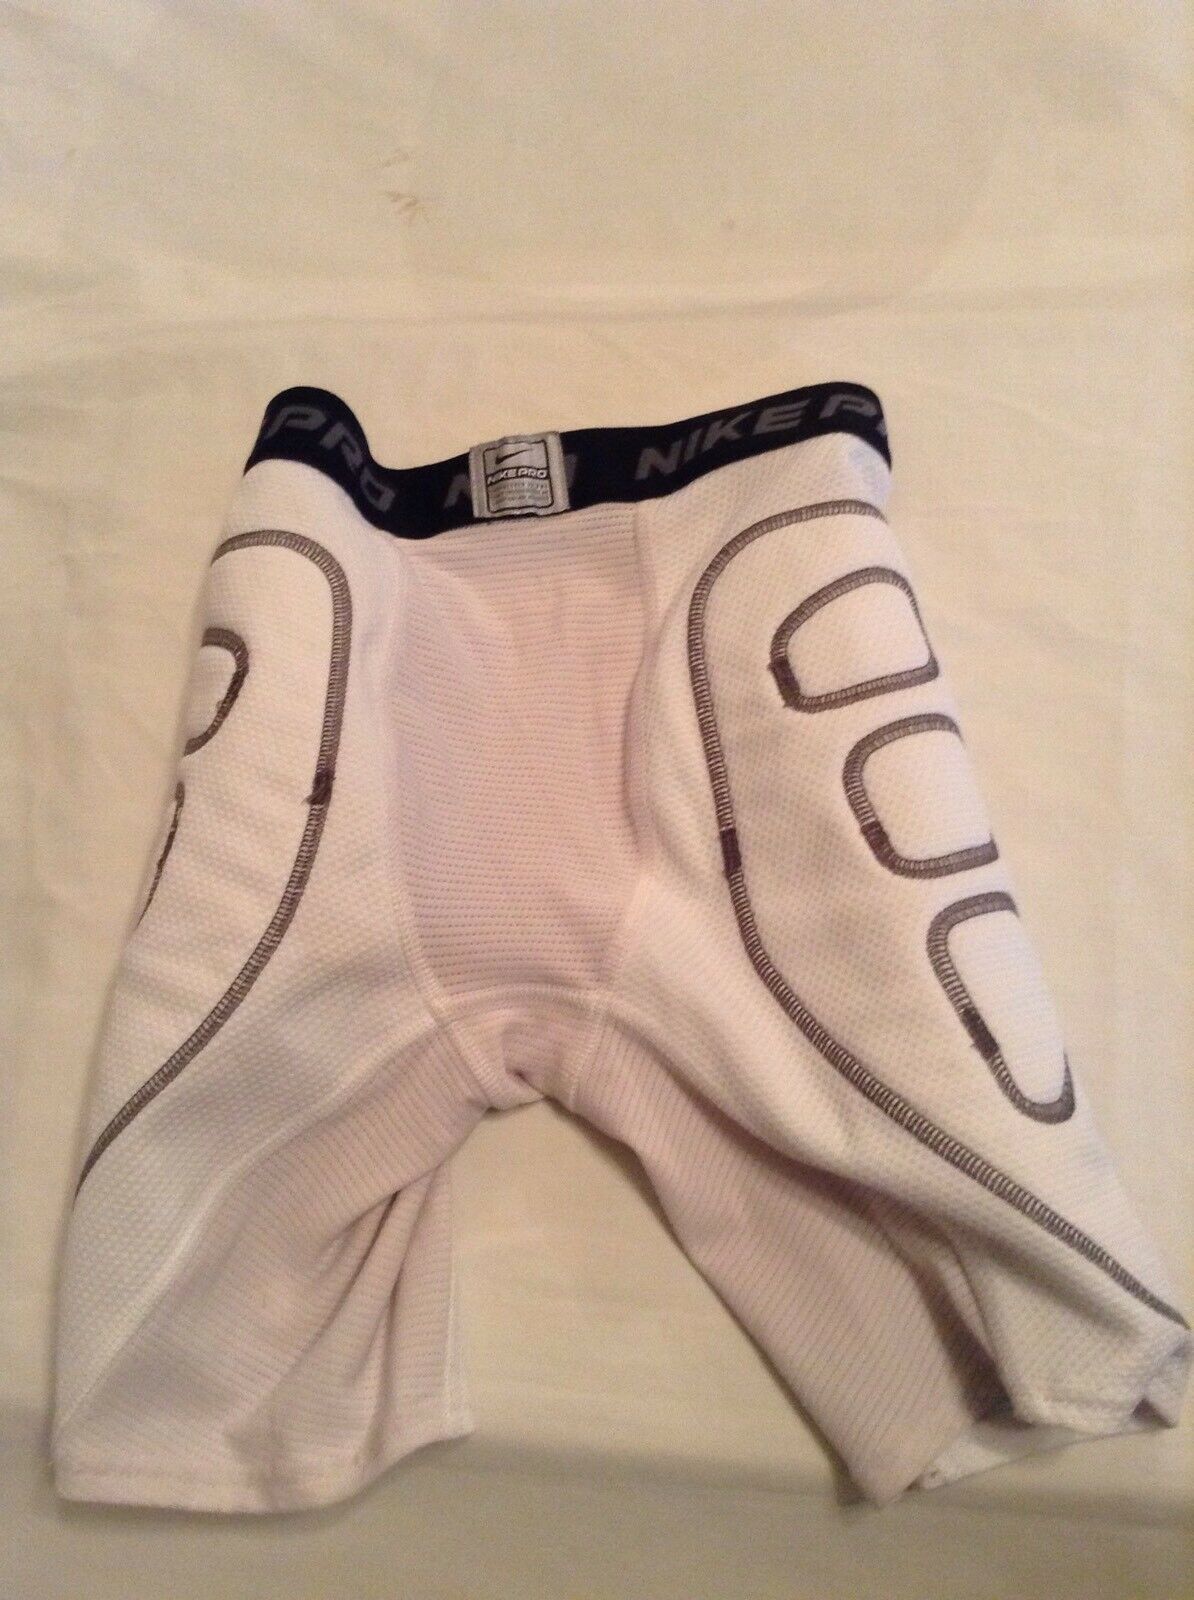 Nike Pro compression shorts youth medium Dri fit girdle padded sports white - $13.99